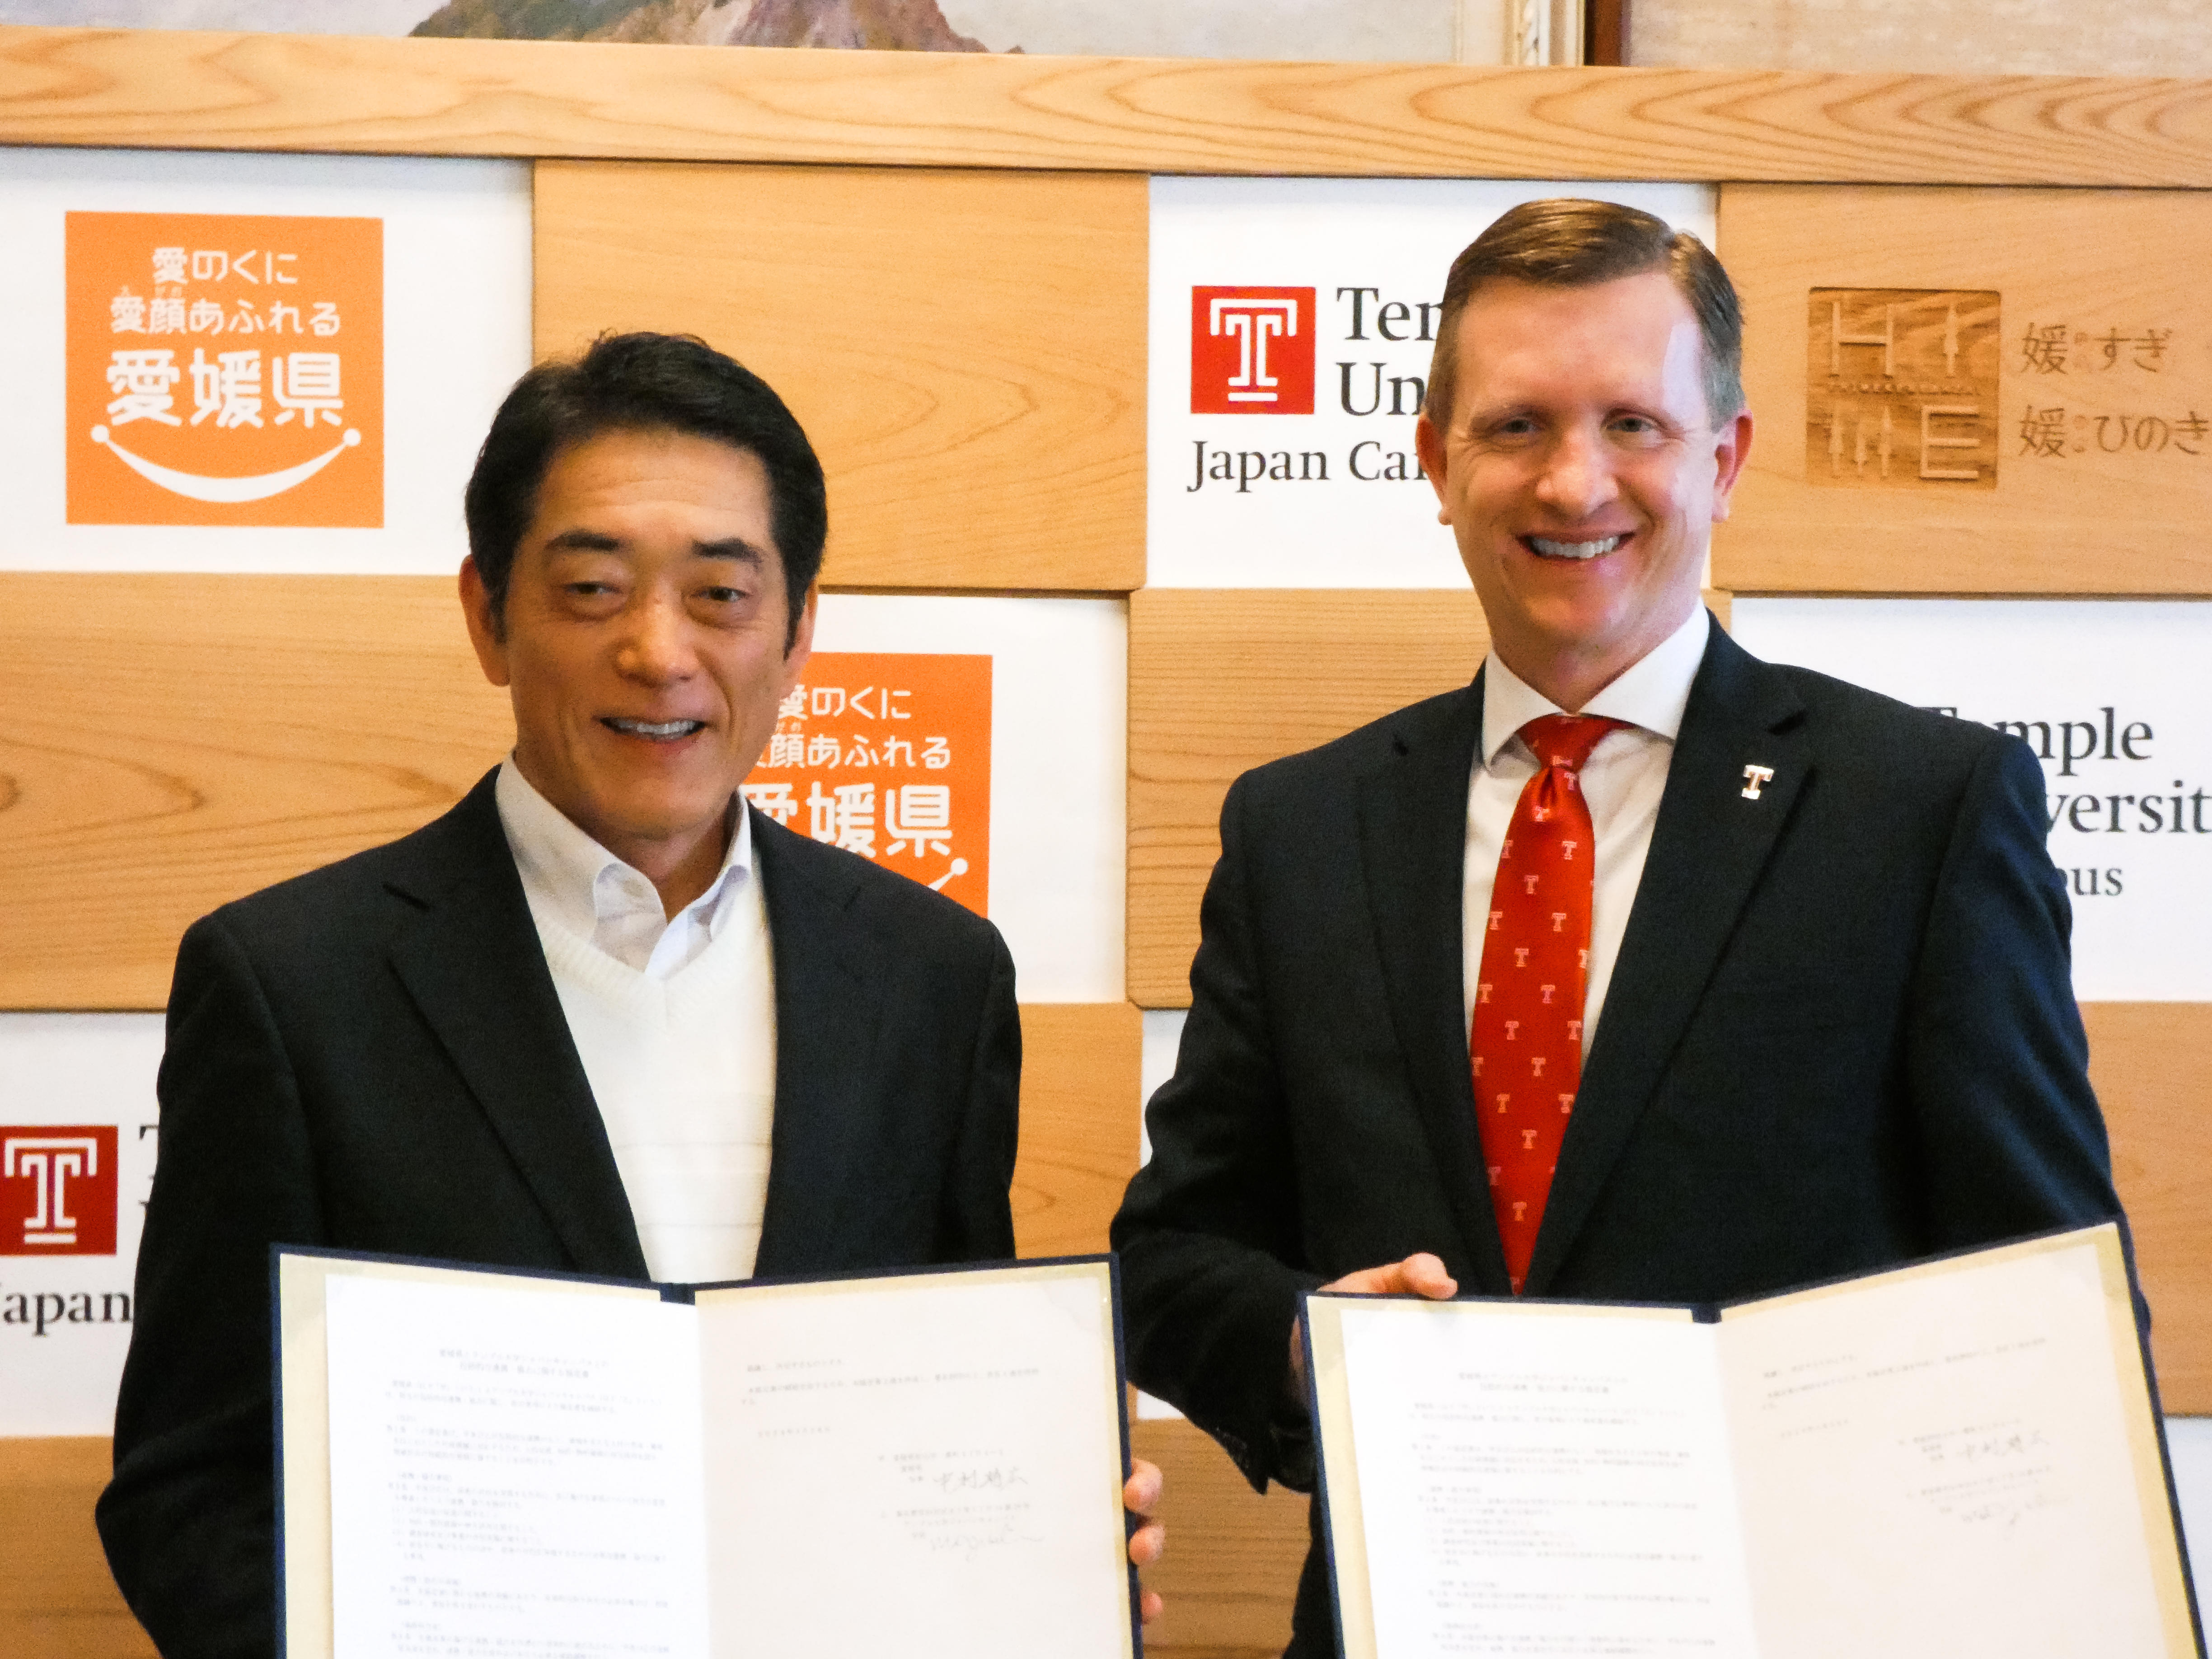 テンプル大学ジャパンキャンパスが愛媛県との間に包括連携協定を締結、都道府県との協定は３件目